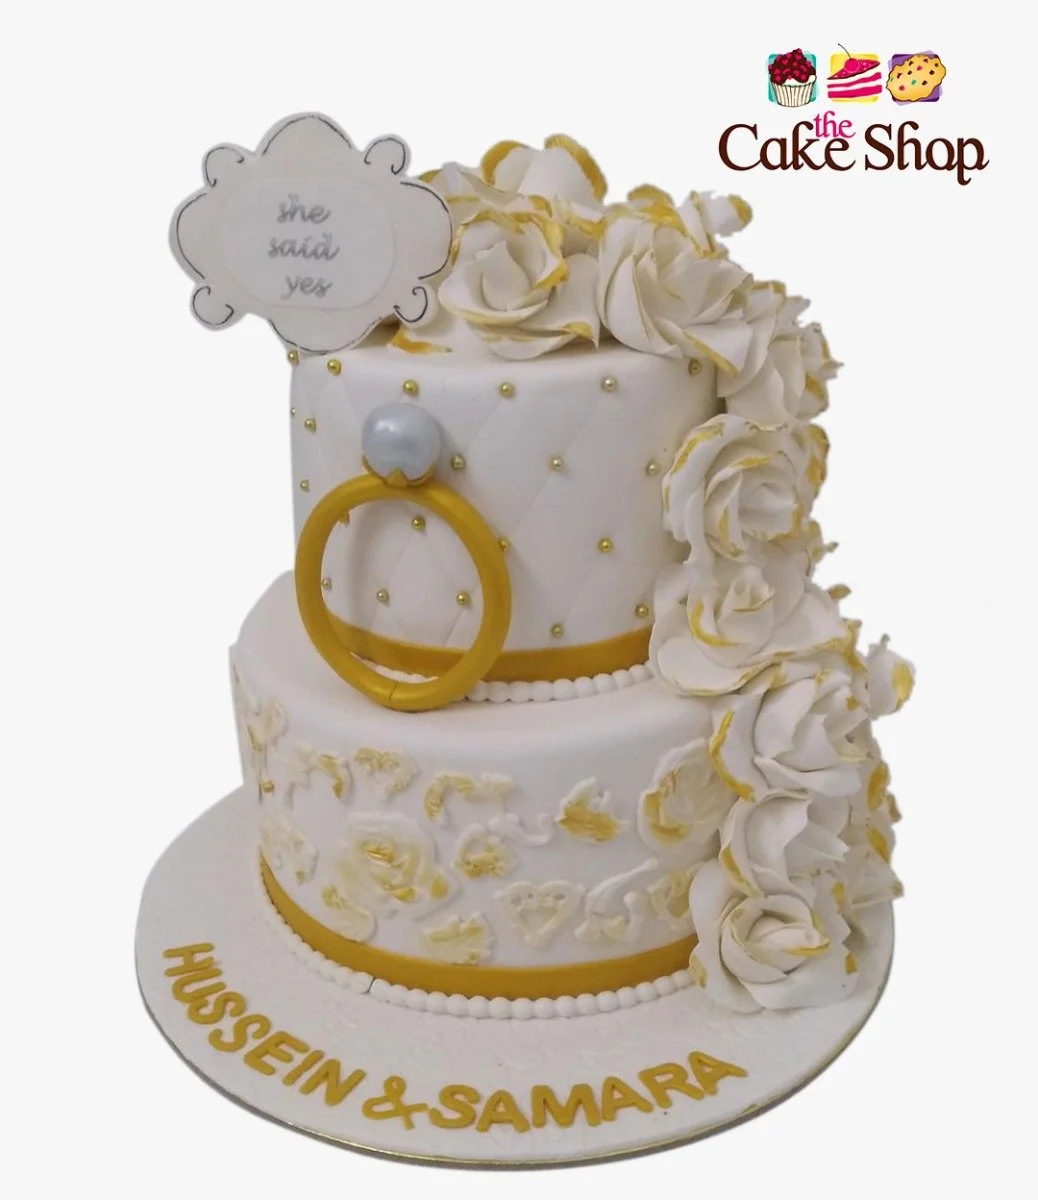 Golden Wedding 3D Cake